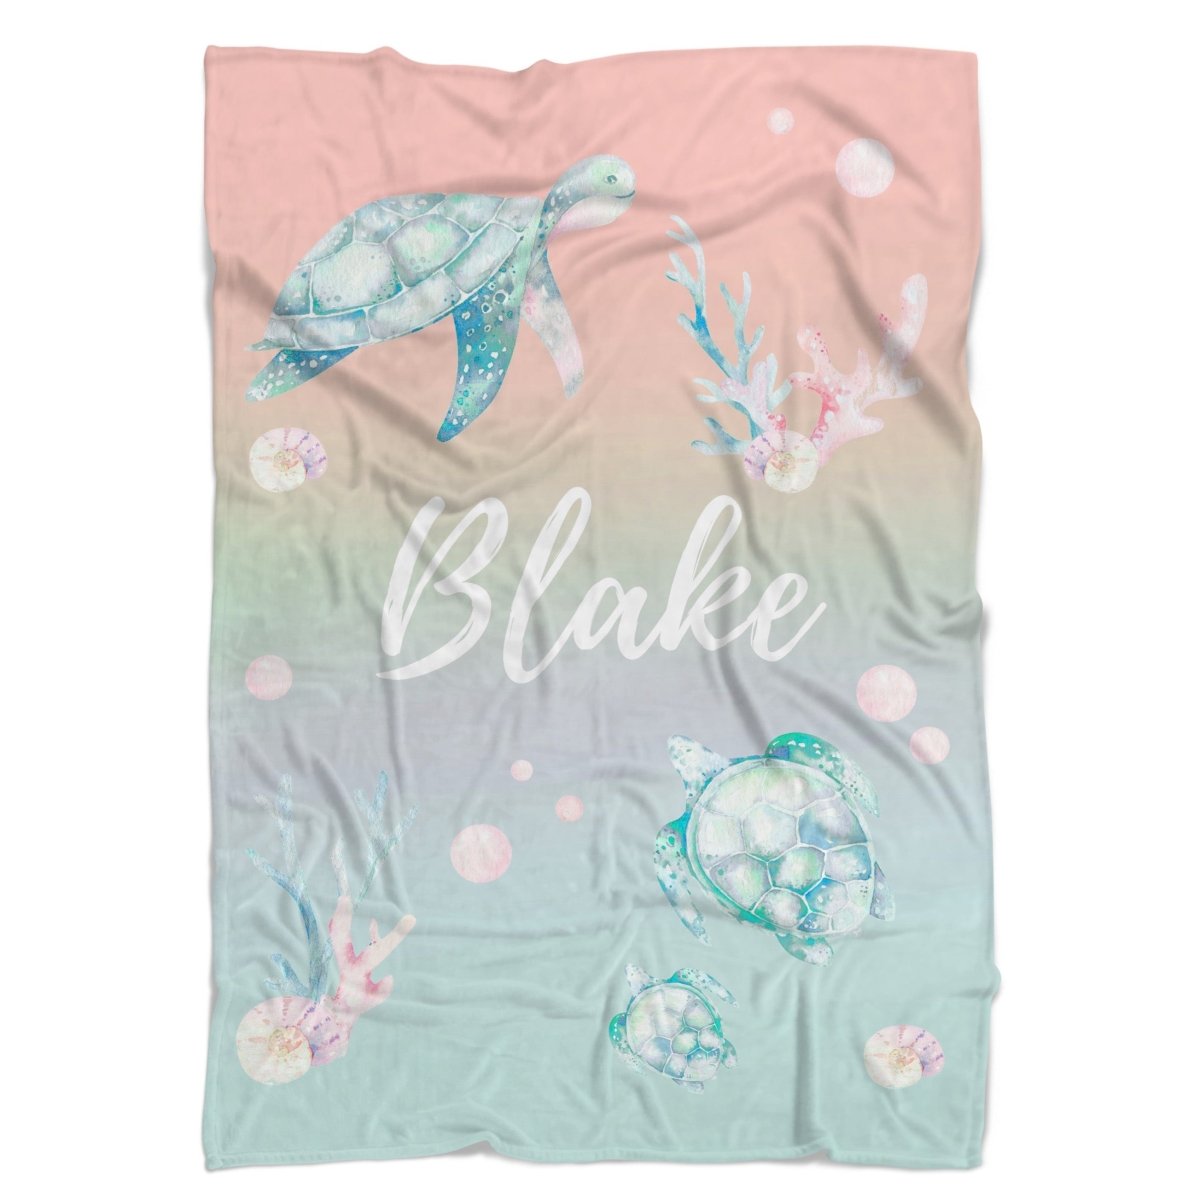 Sweet Sea Turtles Personalized Minky Blanket - gender_boy, gender_girl, gender_neutral